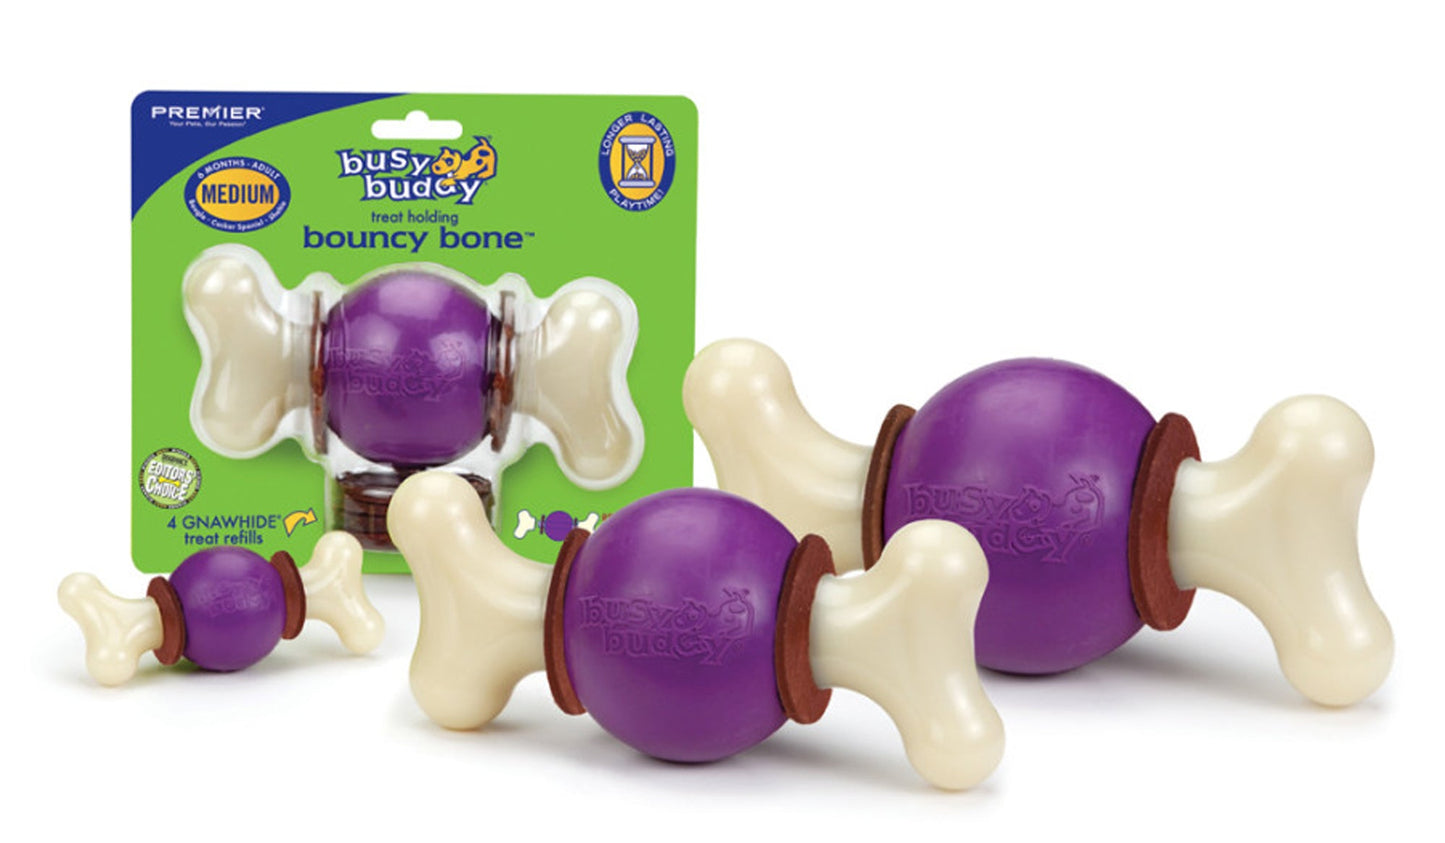 Busy Buddy Bouncy Bone Dog Chew Multi-Color 1ea/MD